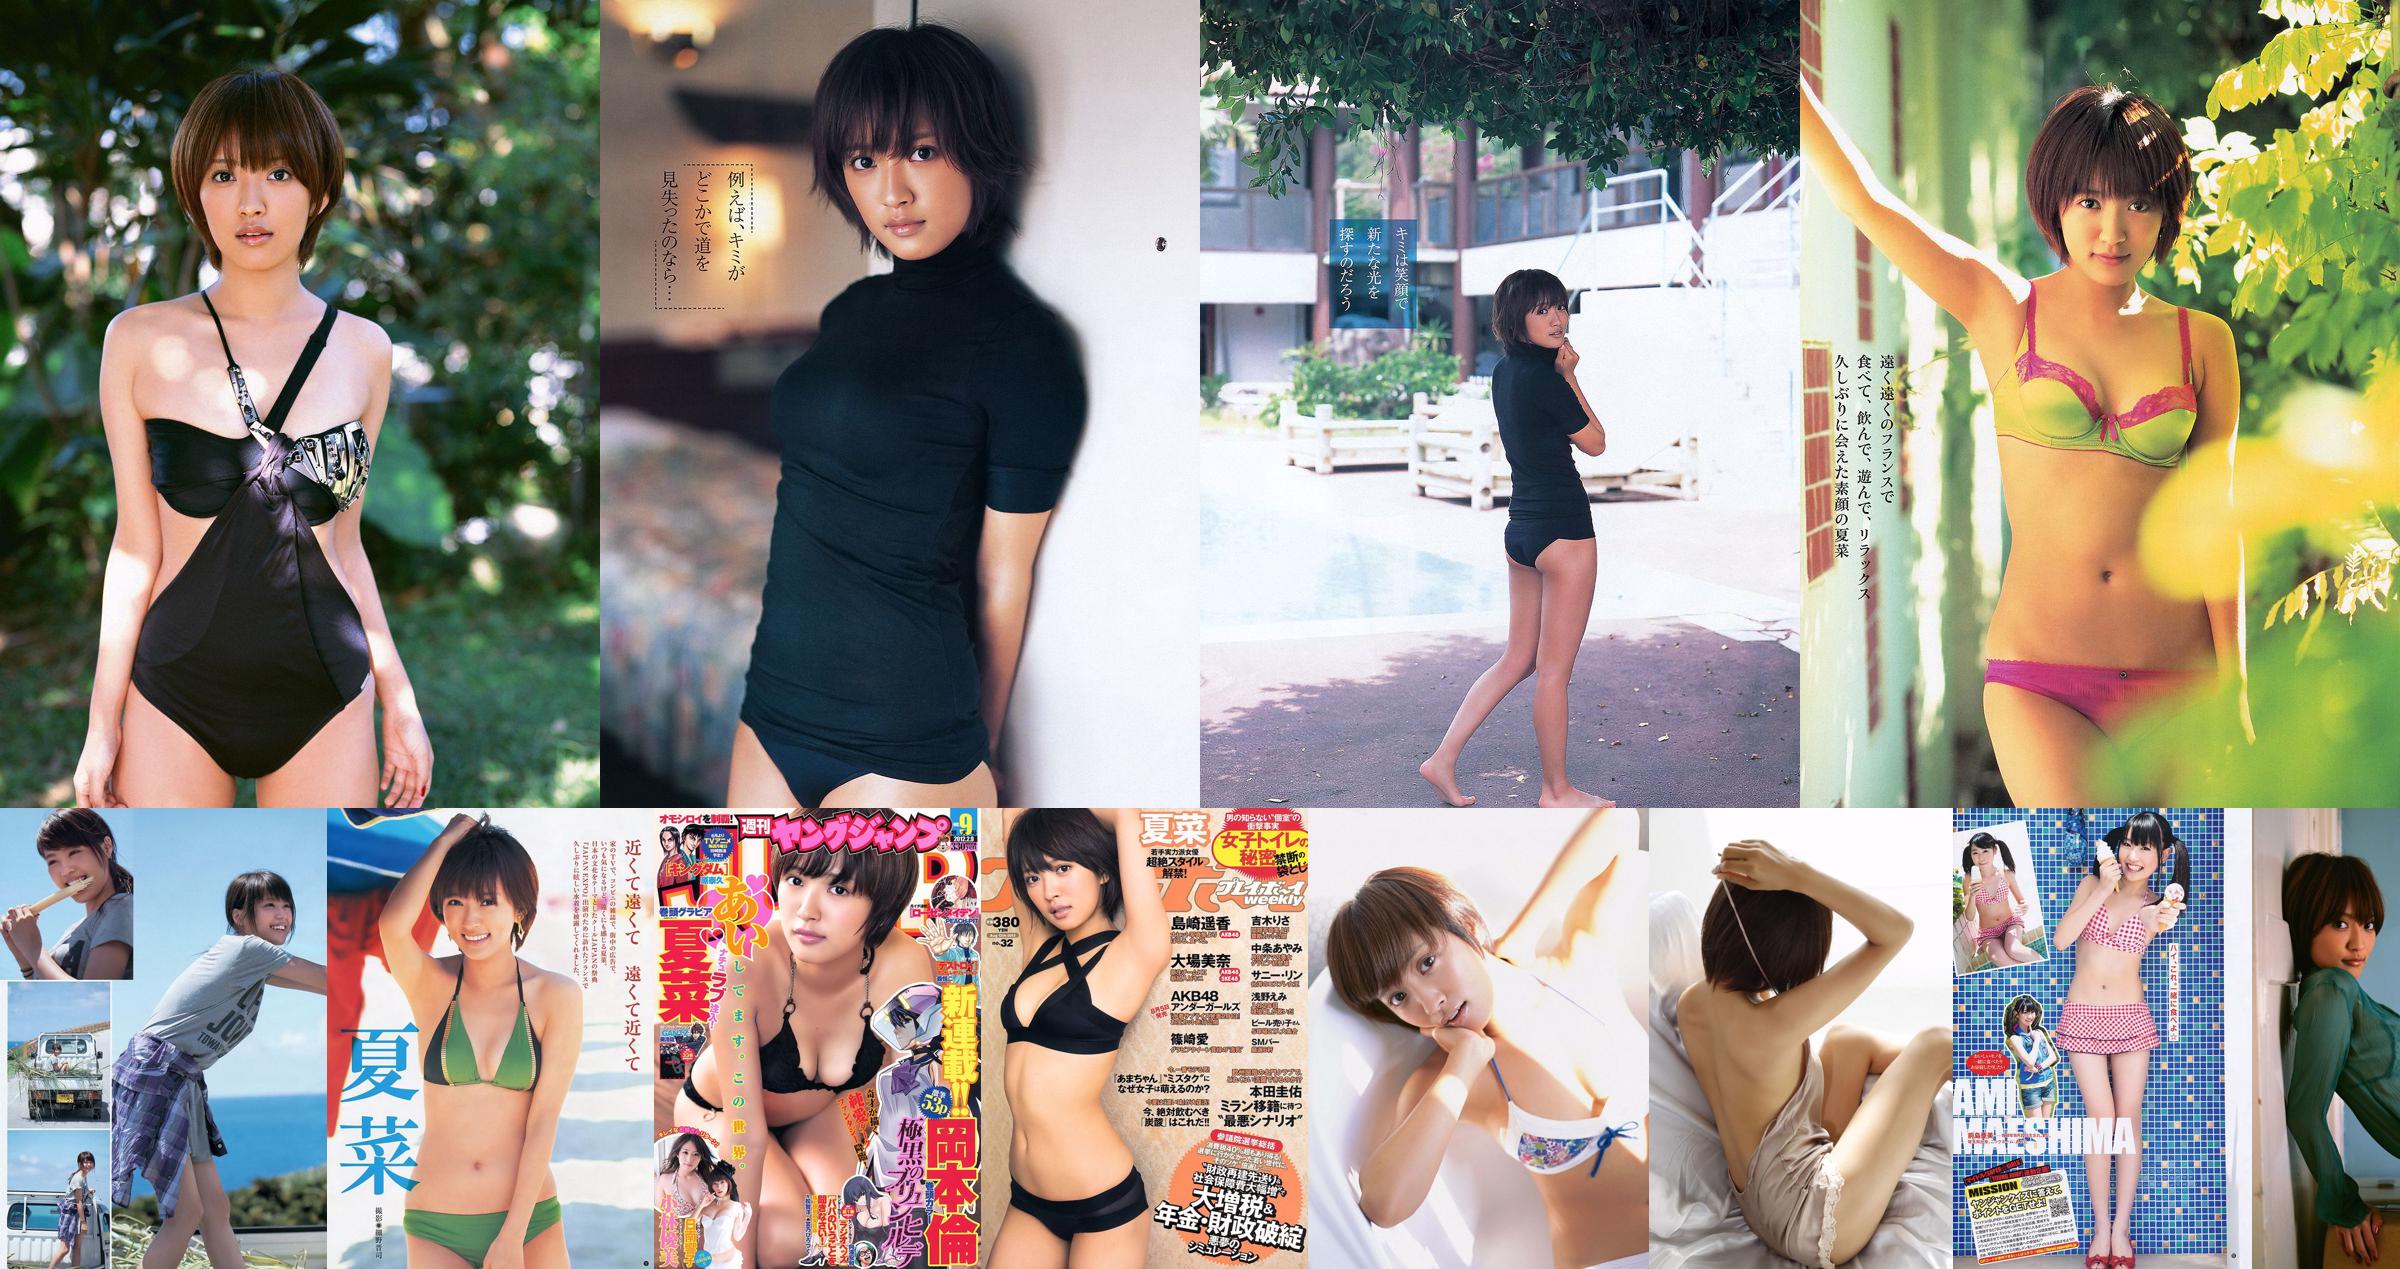 Natsuna Arimura Kasumi Nishizaki Rima Ito Yumi Adachi Yumi KONAN Toda Rei Aina Komiya Arisa [Wöchentlicher Playboy] 2013 Nr. 47 Foto Toshi No.0fd854 Seite 7